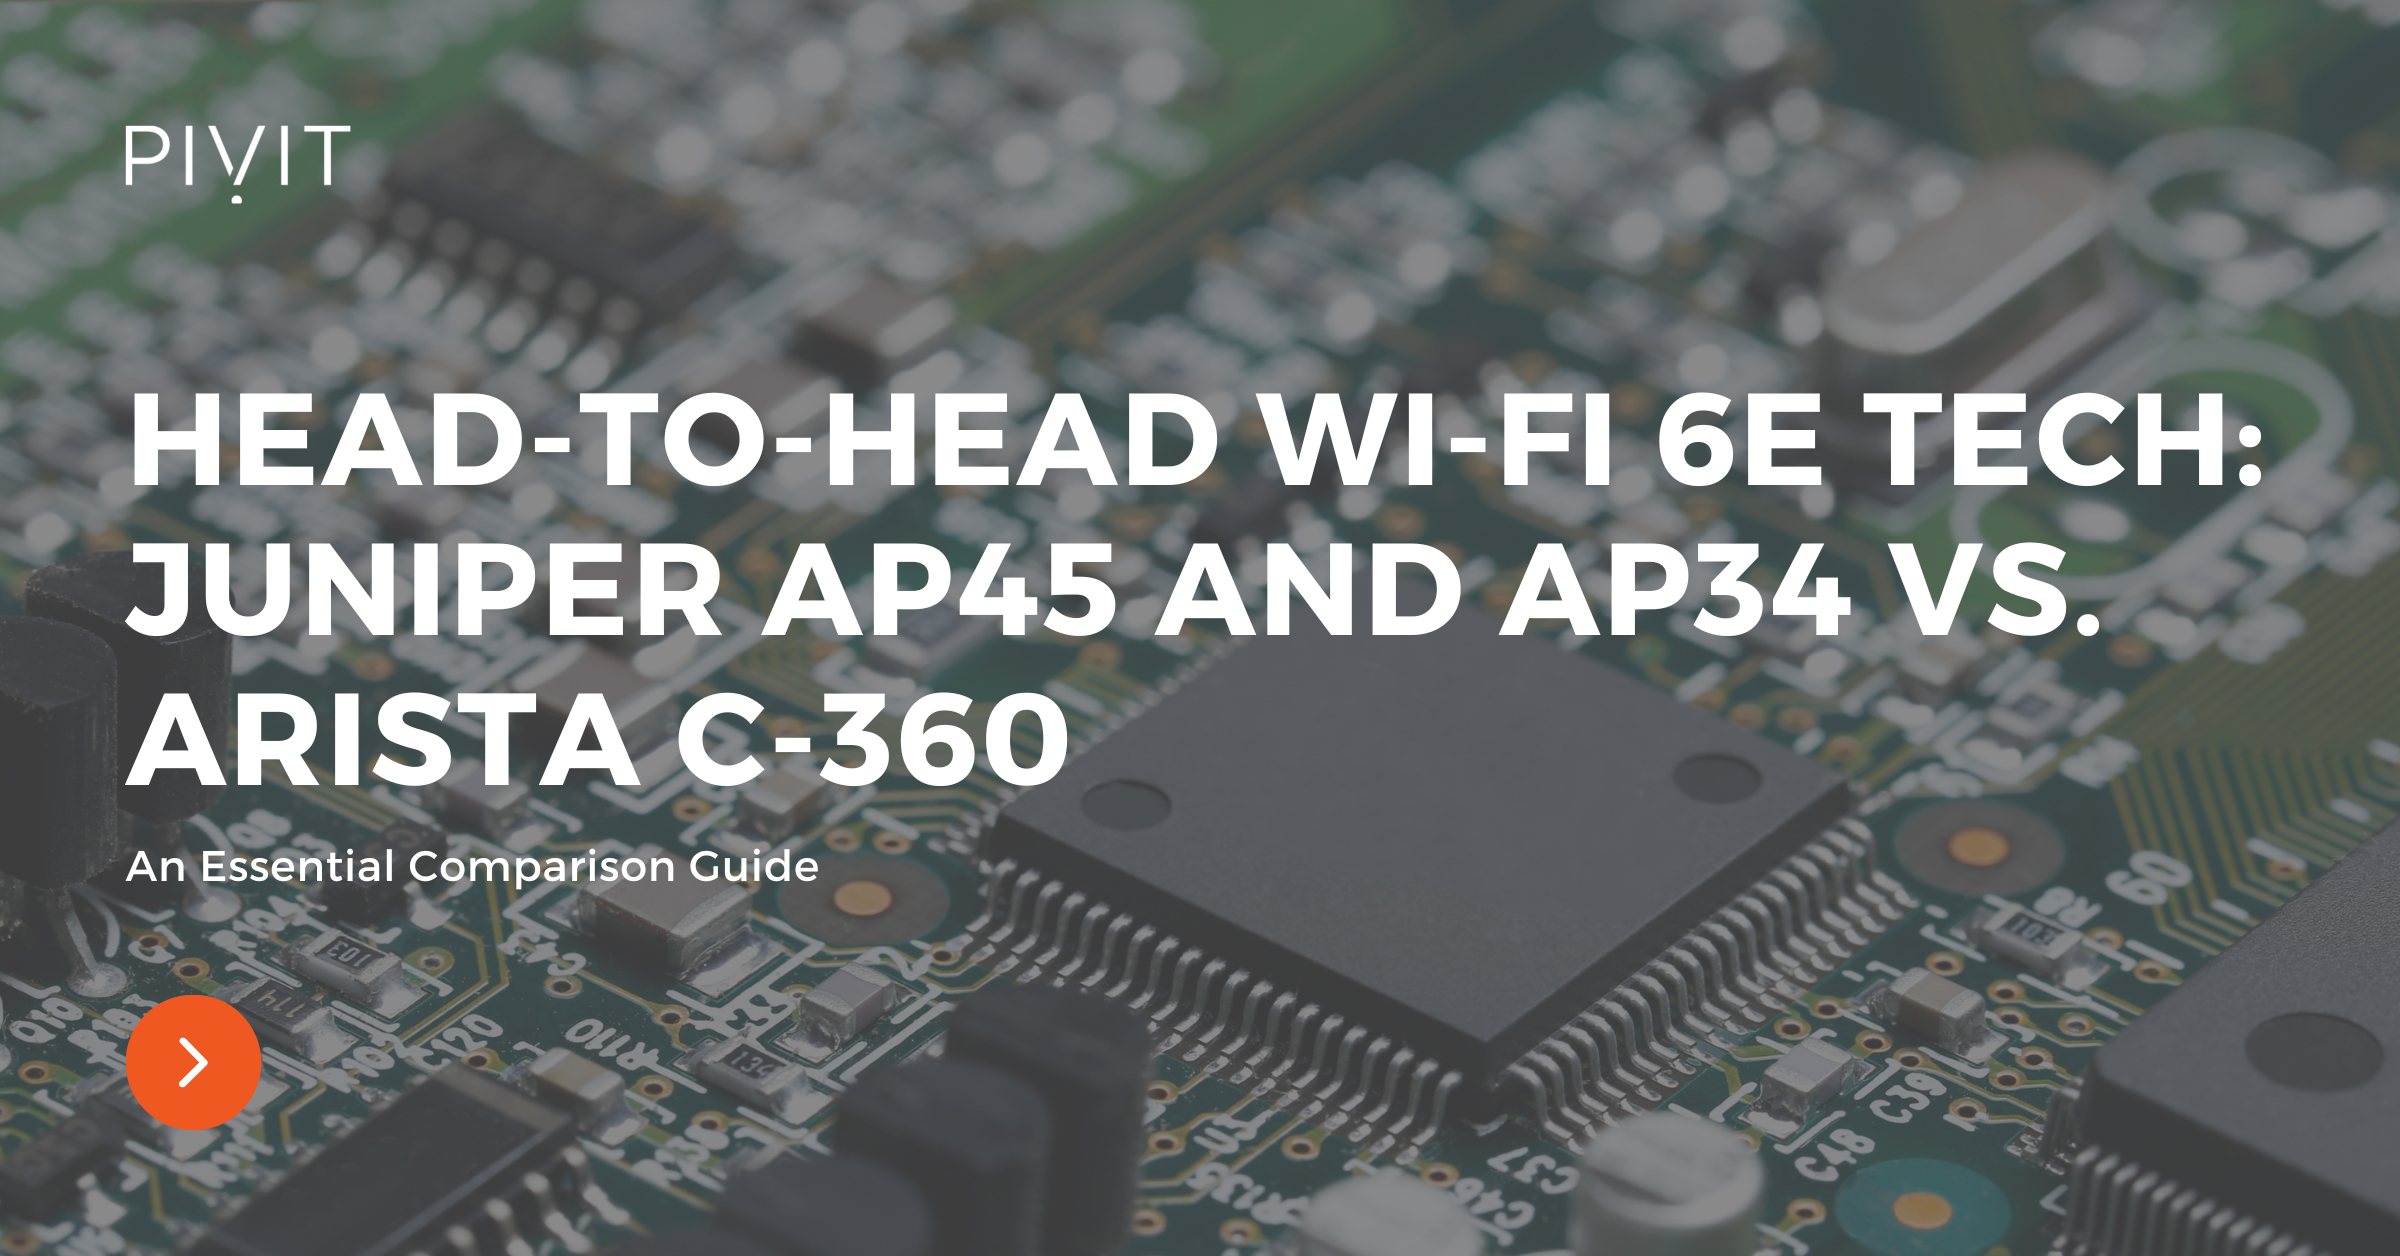 Head-to-Head Wi-Fi 6E Tech: Juniper AP45 and AP34 vs. Arista C-360